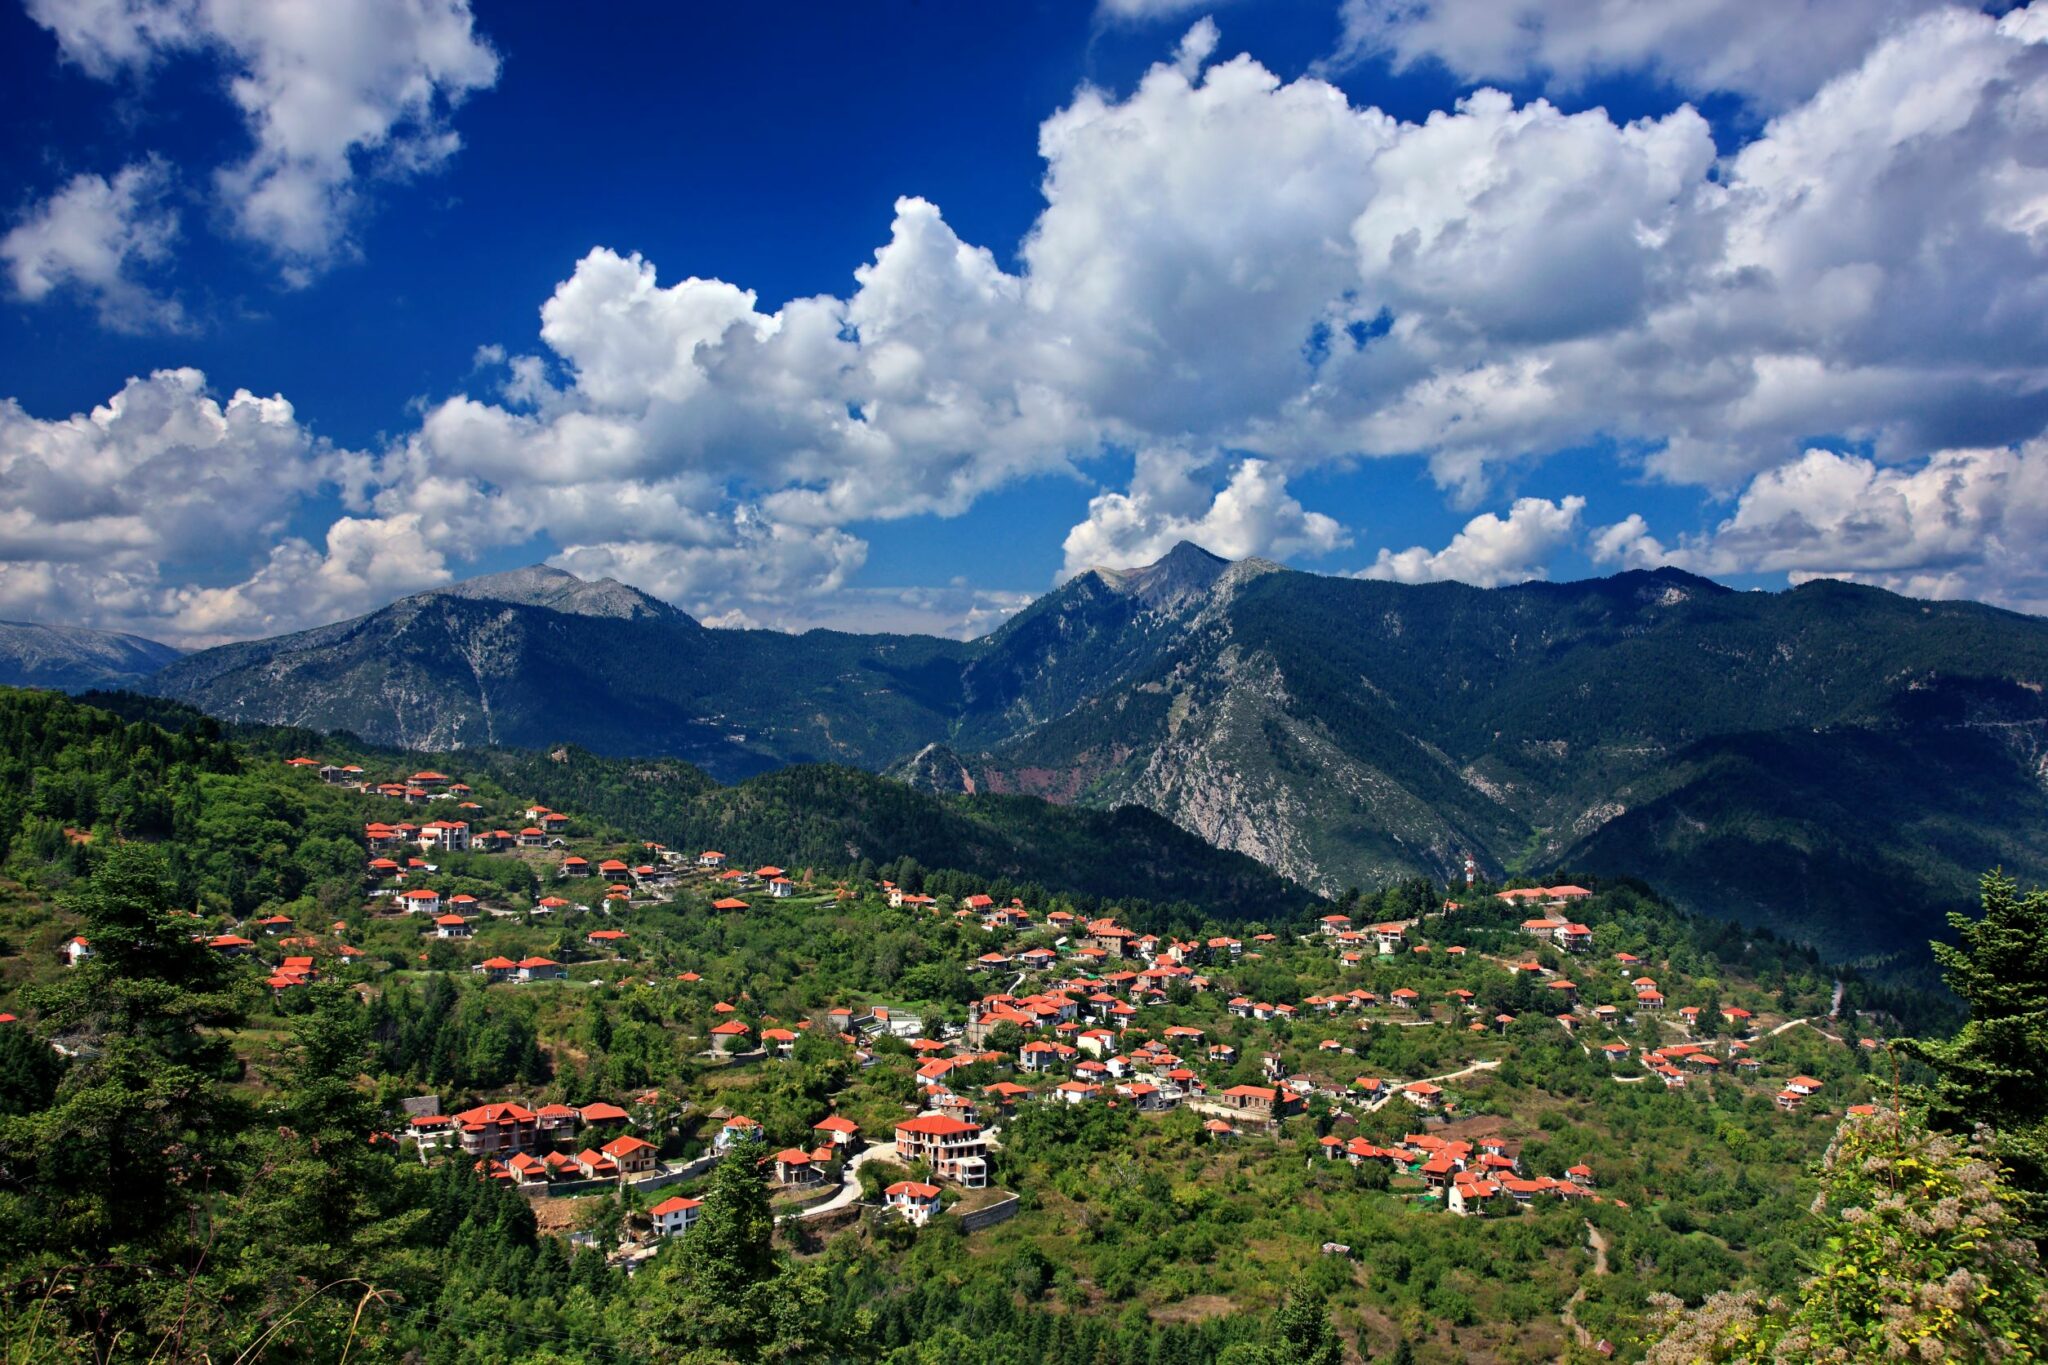 Ορεινή Ναυπακτία: Ένας αυθεντικός προορισμός με γραφικά χωριά που αξίζει να επισκεφθείτε